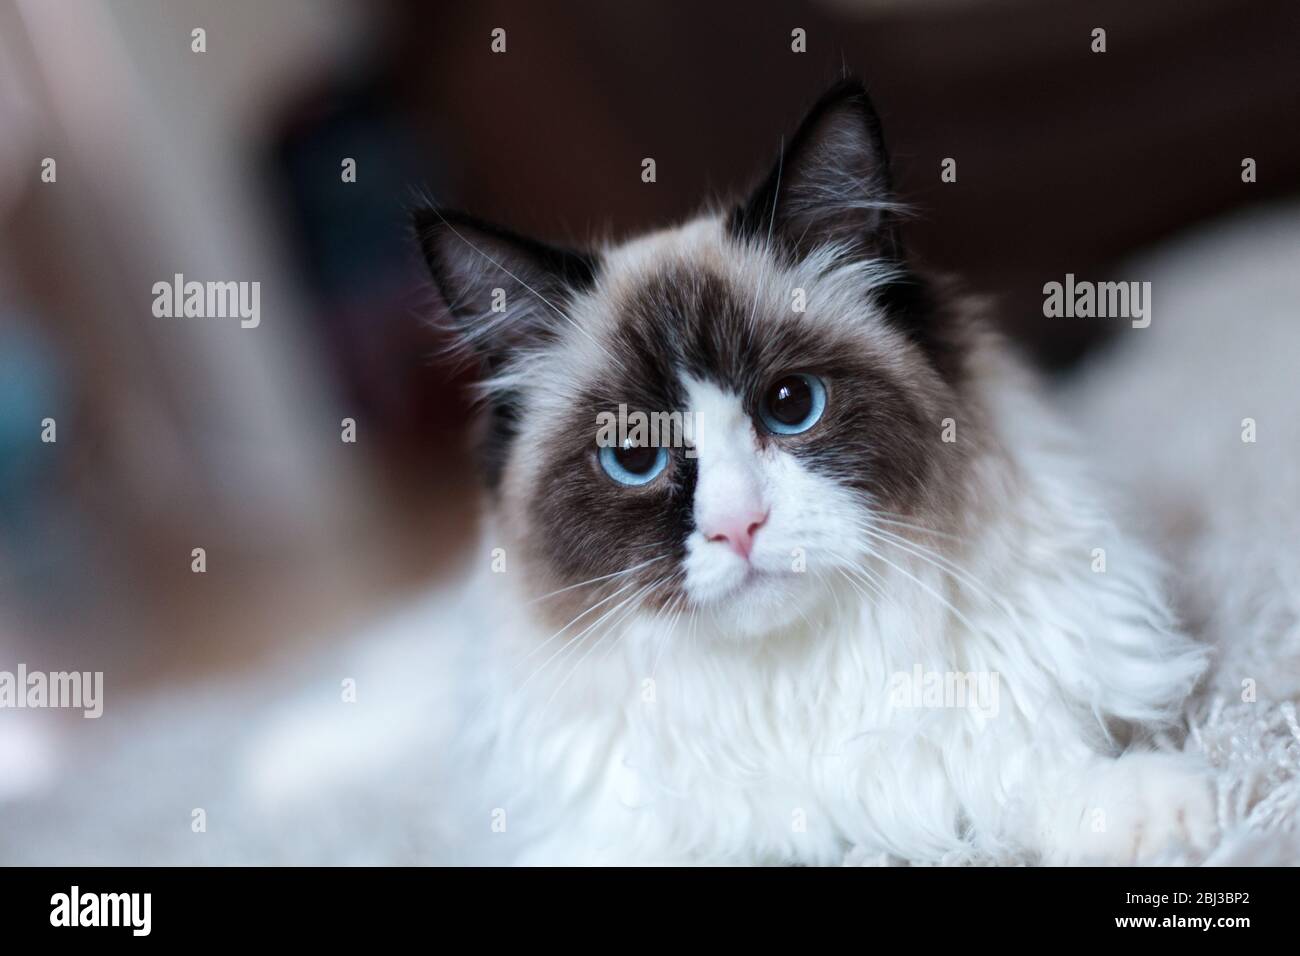 Un grande gatto di bambola maschio bicolore che si rilassa su un tappeto in una dimora domestica. Il gatto ha occhi blu vividi e pelliccia bianca e marrone Foto Stock